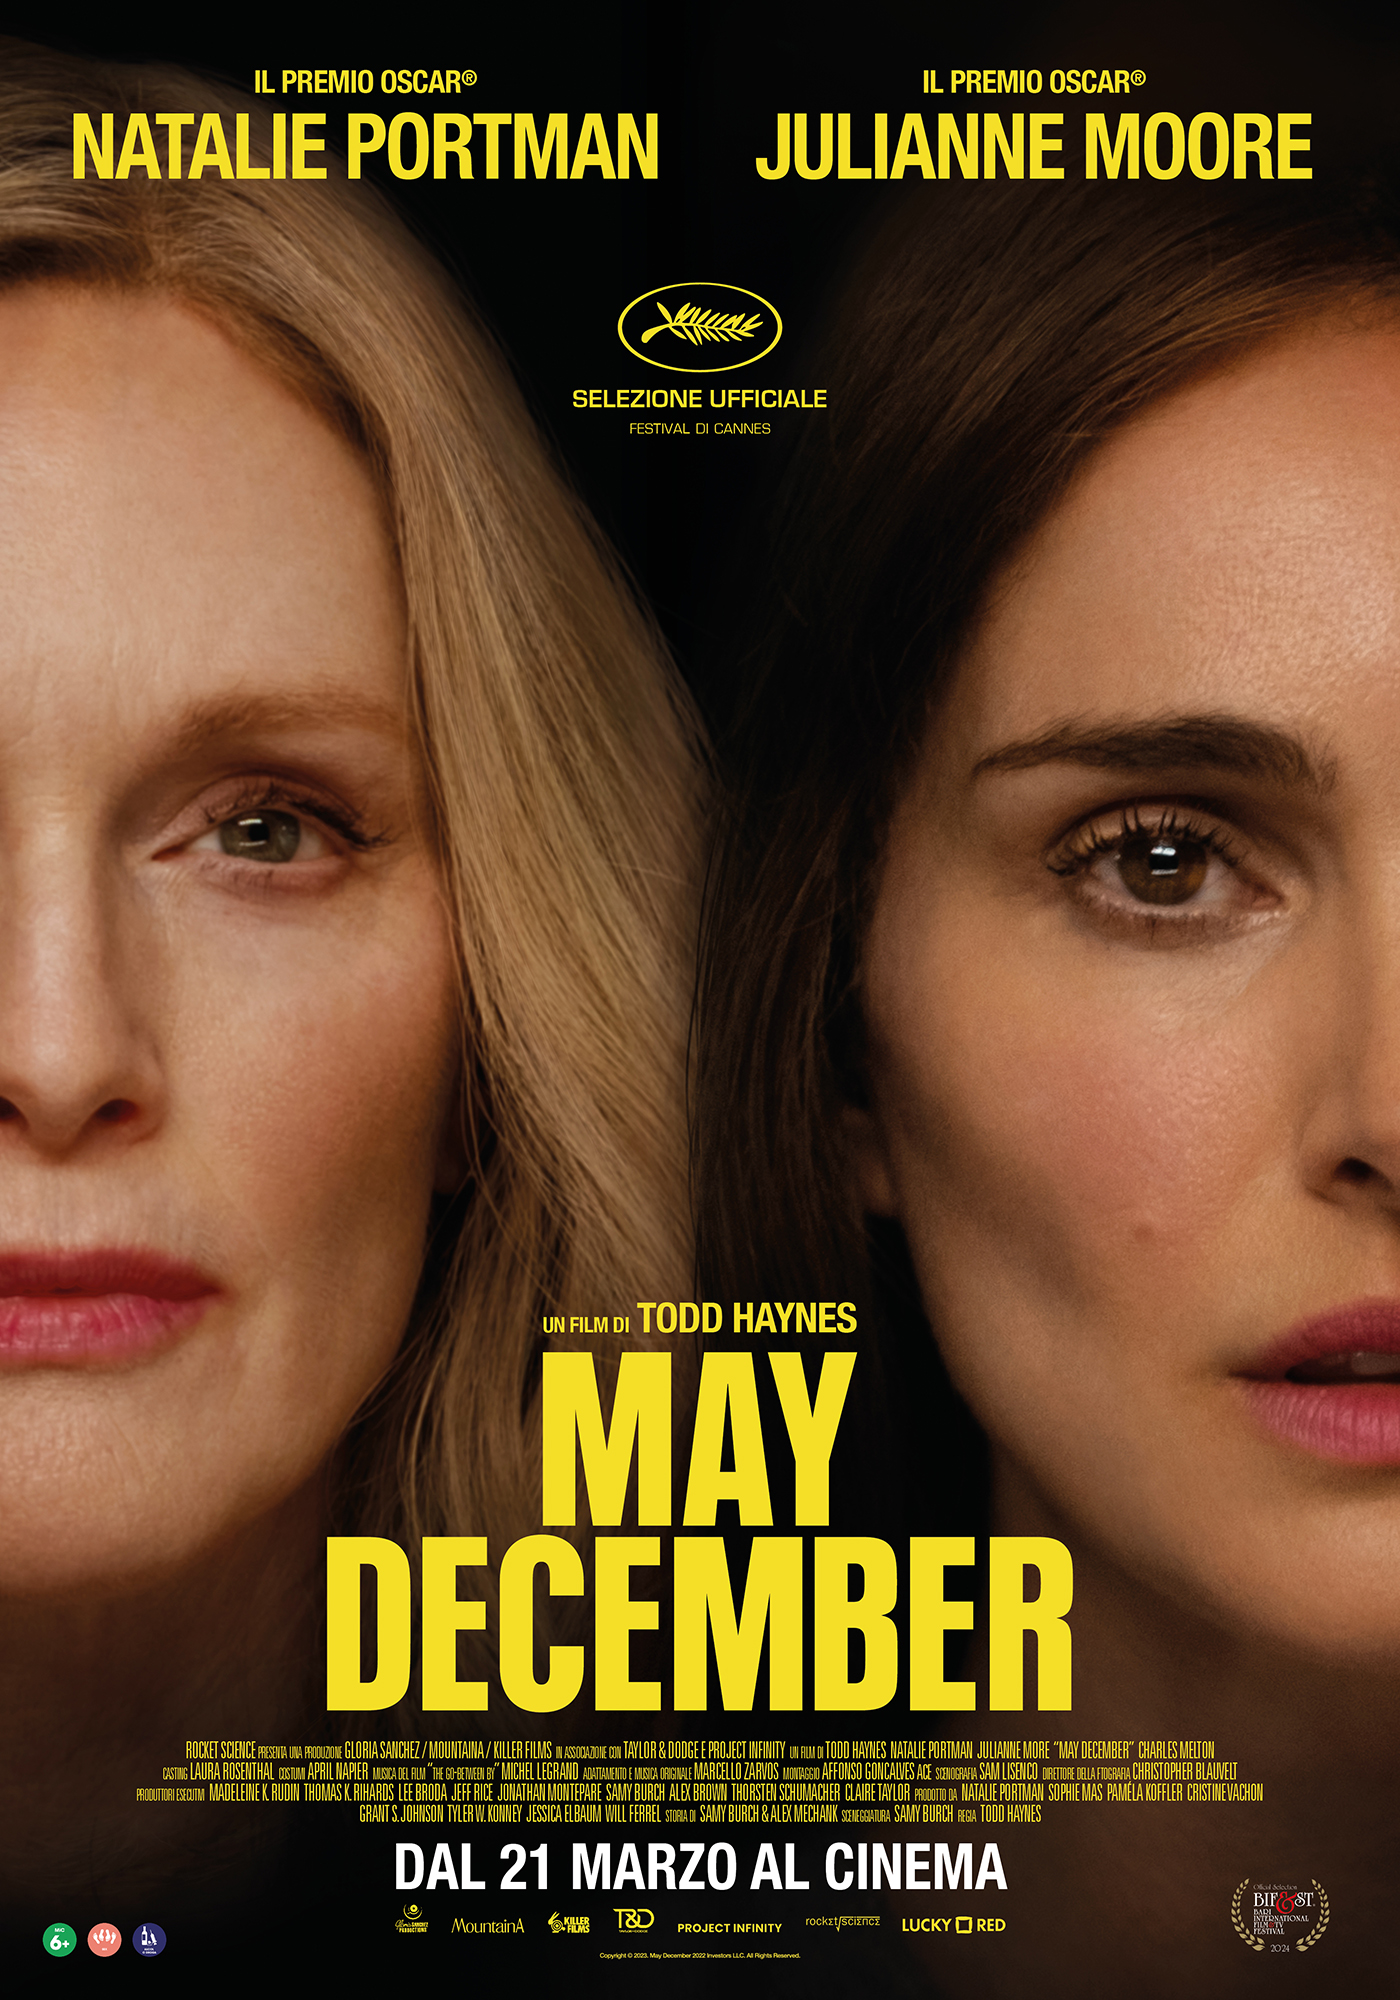 La locandina ufficiale dell'ultimo lungometraggio diretto da Todd Haynes, May December, con protagoniste Julianne Moore e Natalie Portman